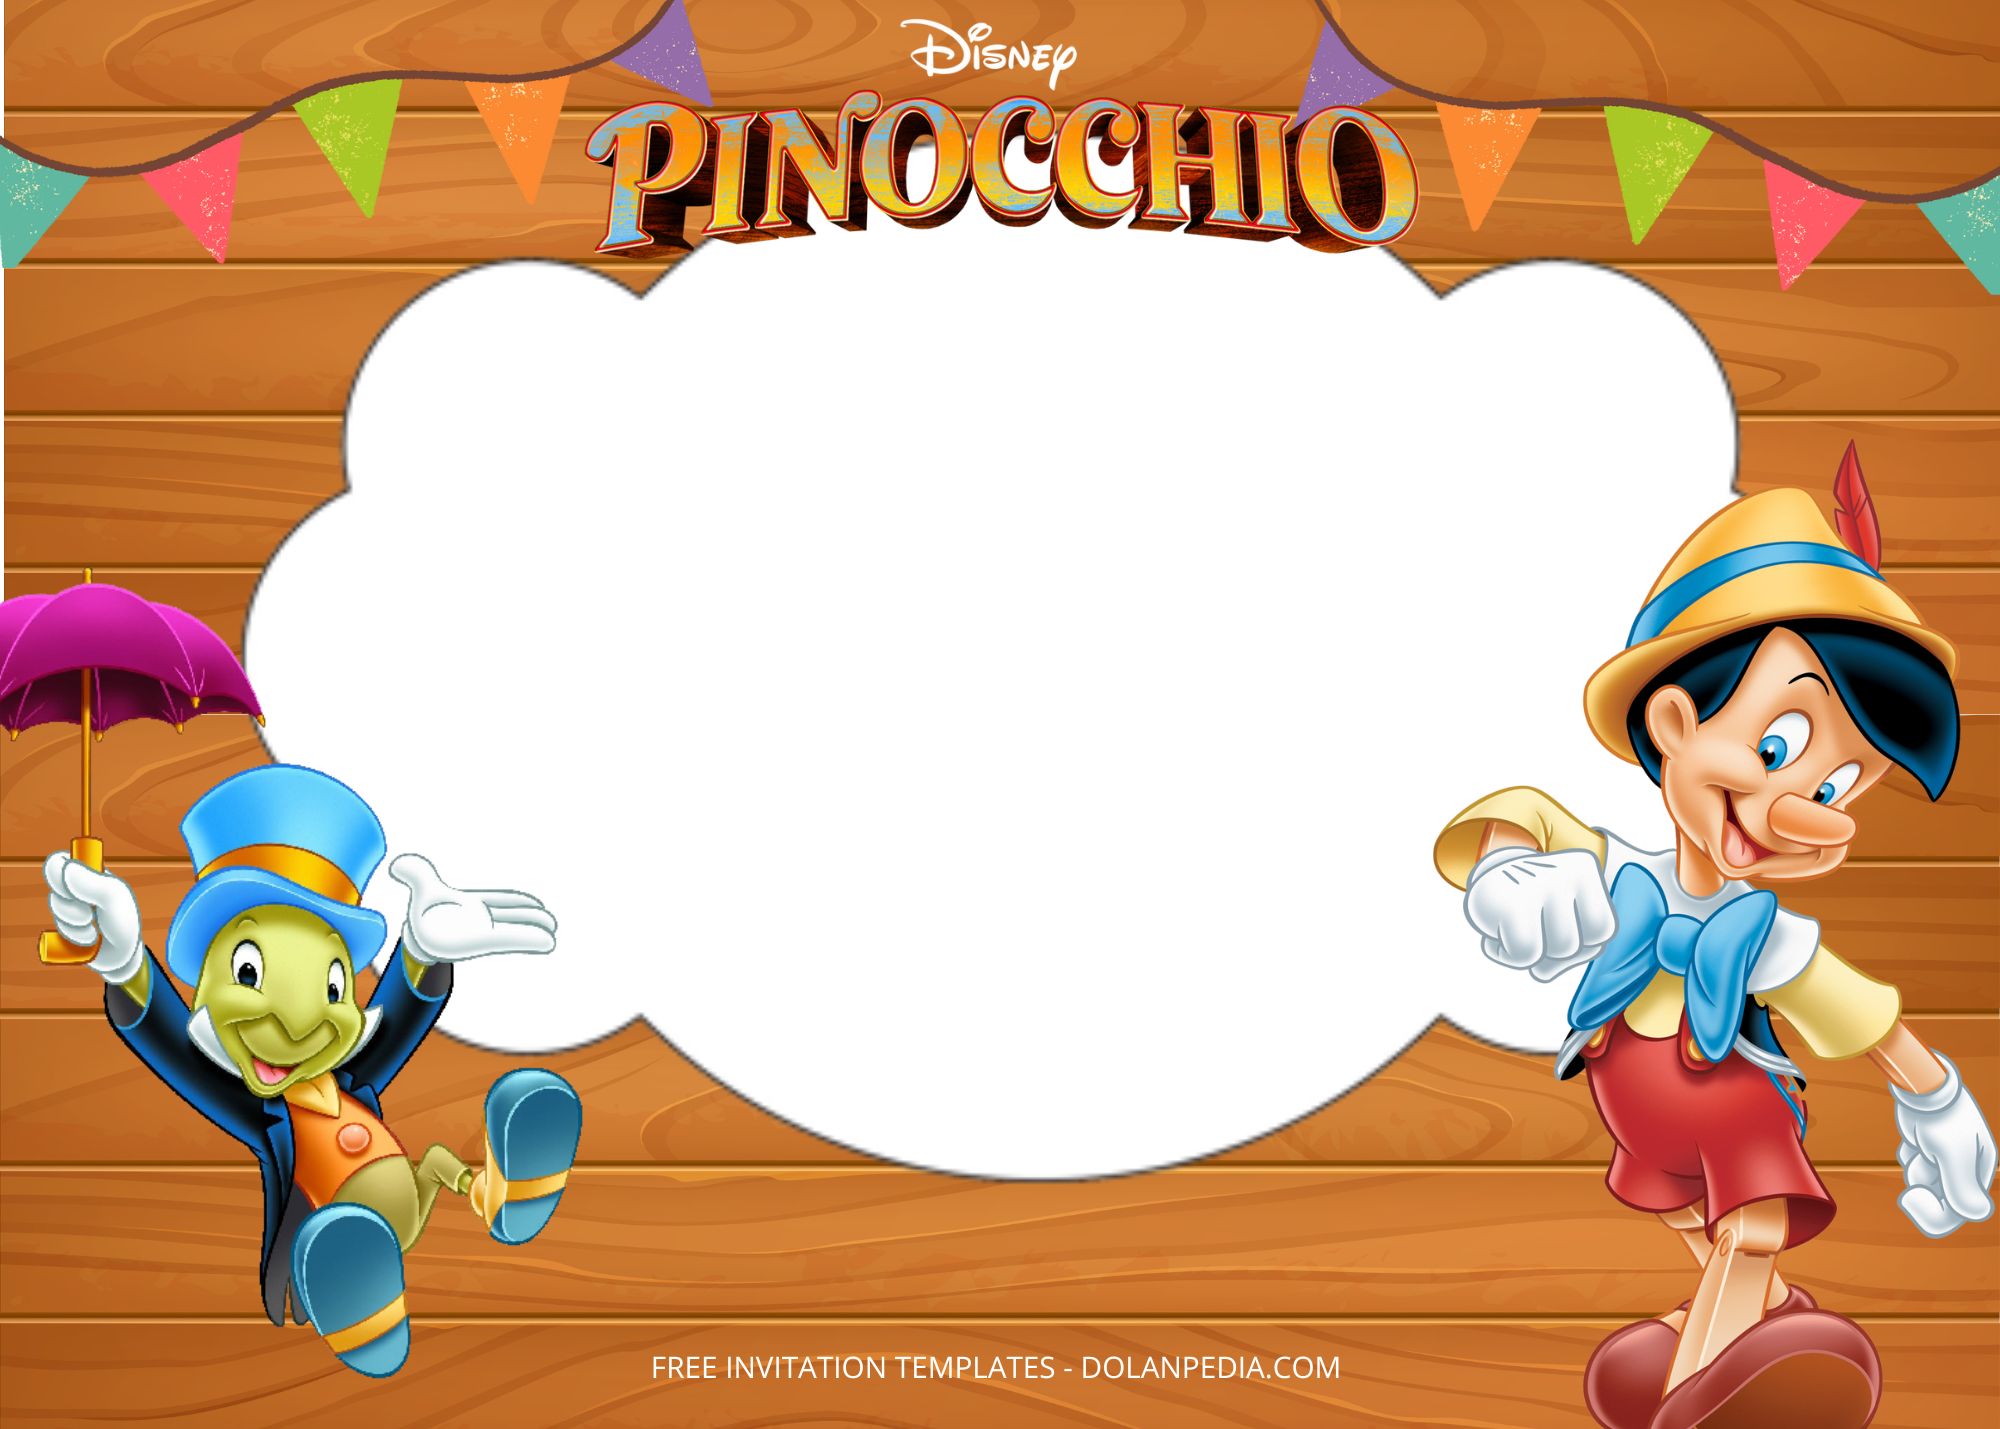 Blank Pinocchio Birthday Party Templates Four